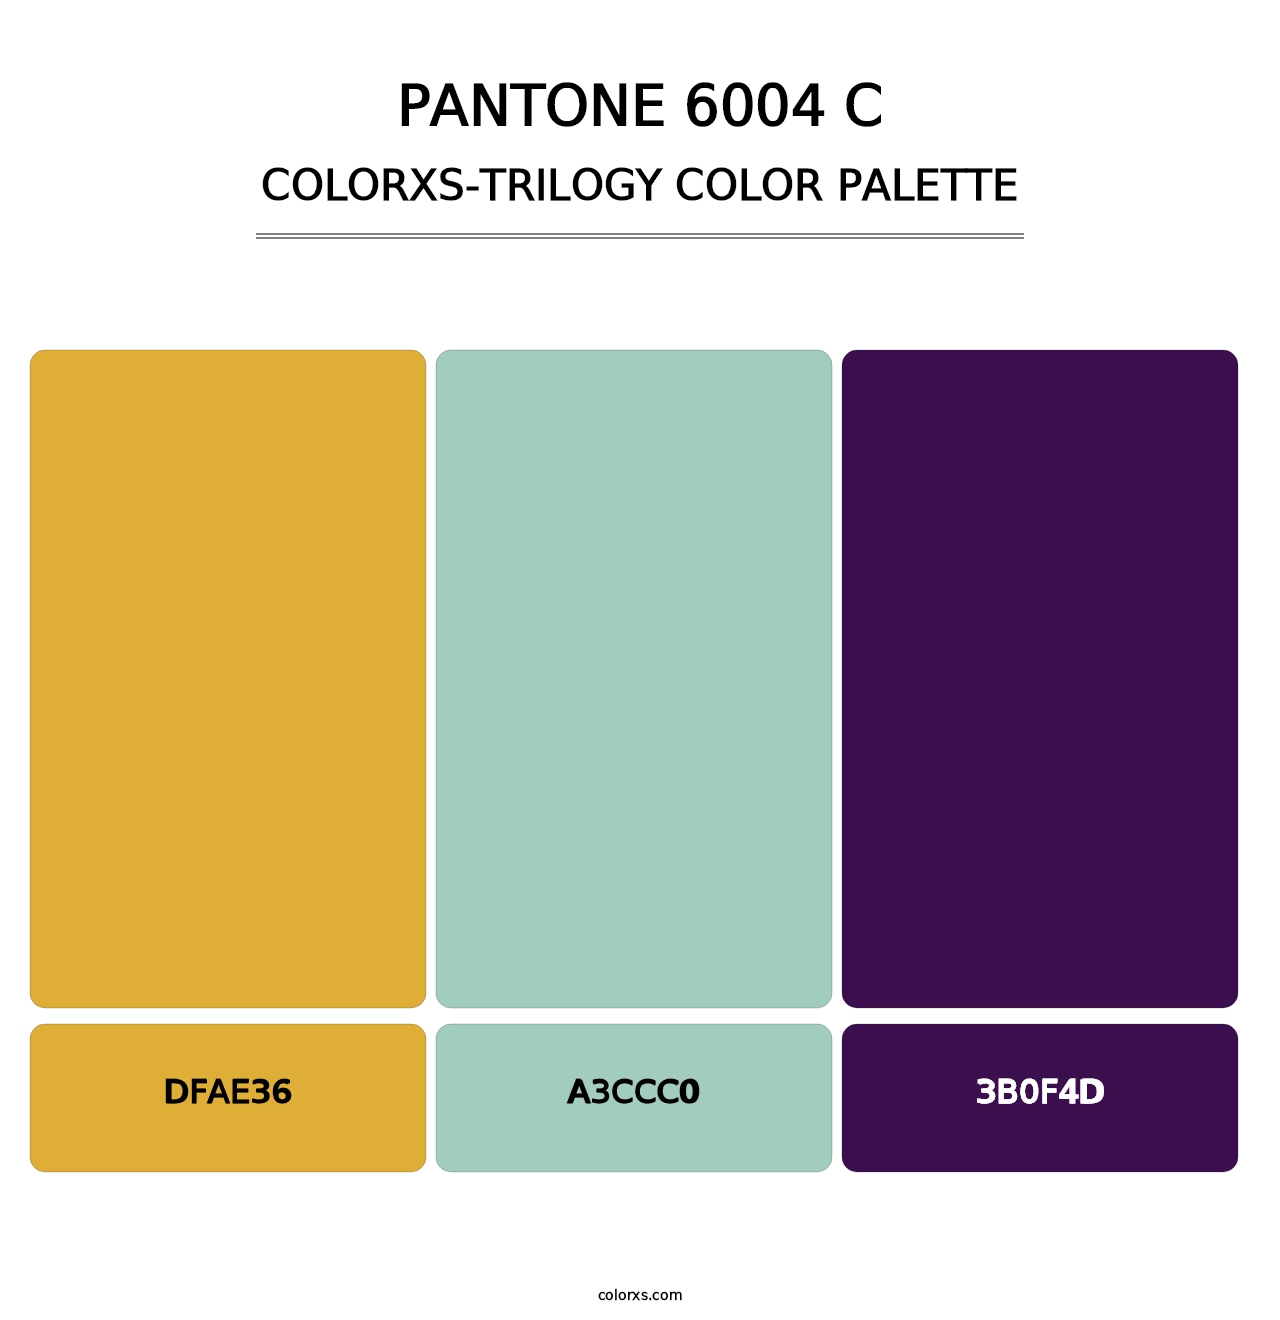 PANTONE 6004 C - Colorxs Trilogy Palette